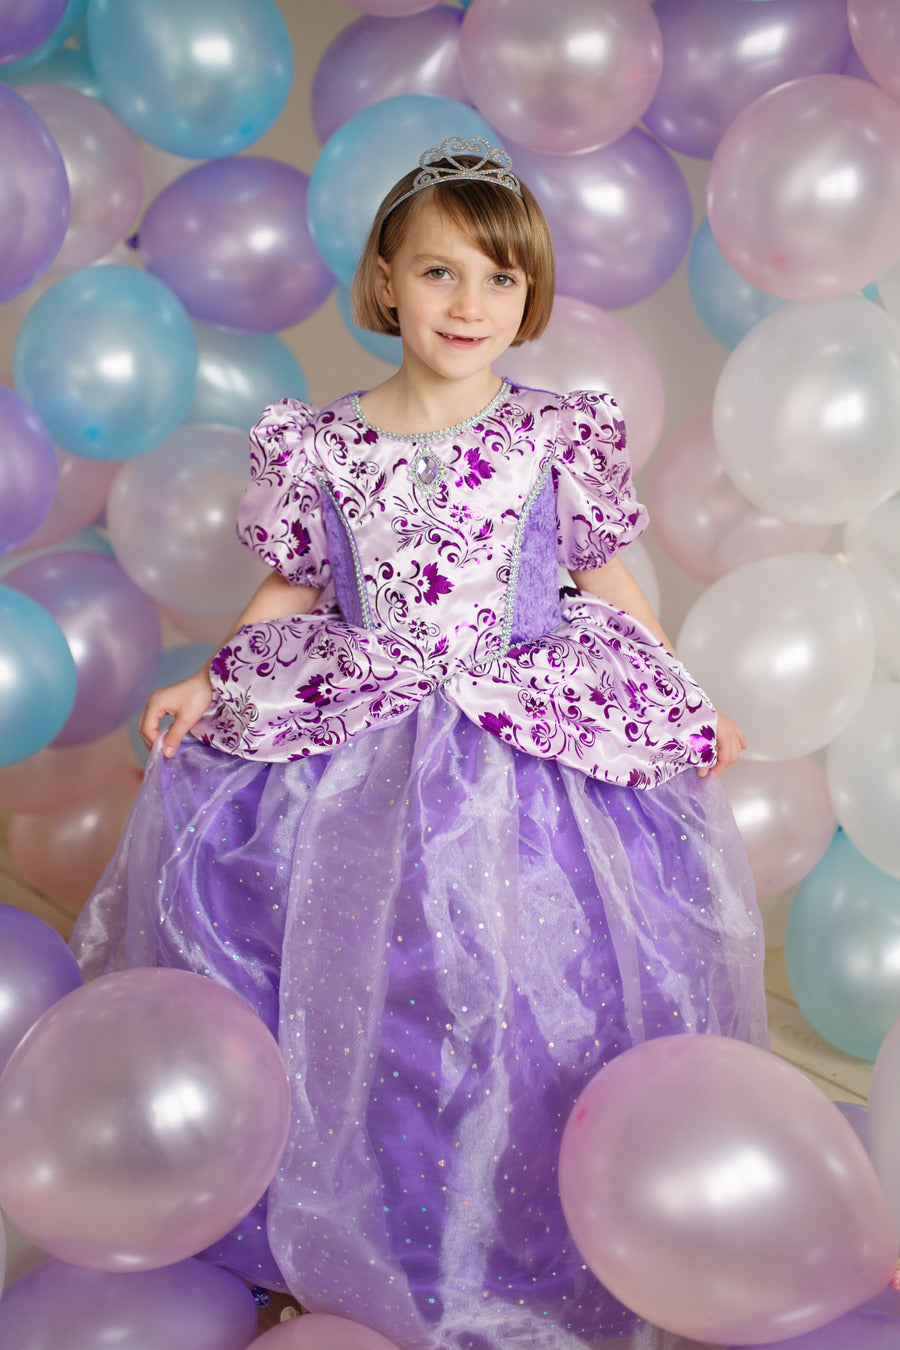 Royal Pretty Princess Lilac Dress (Size 3-4)